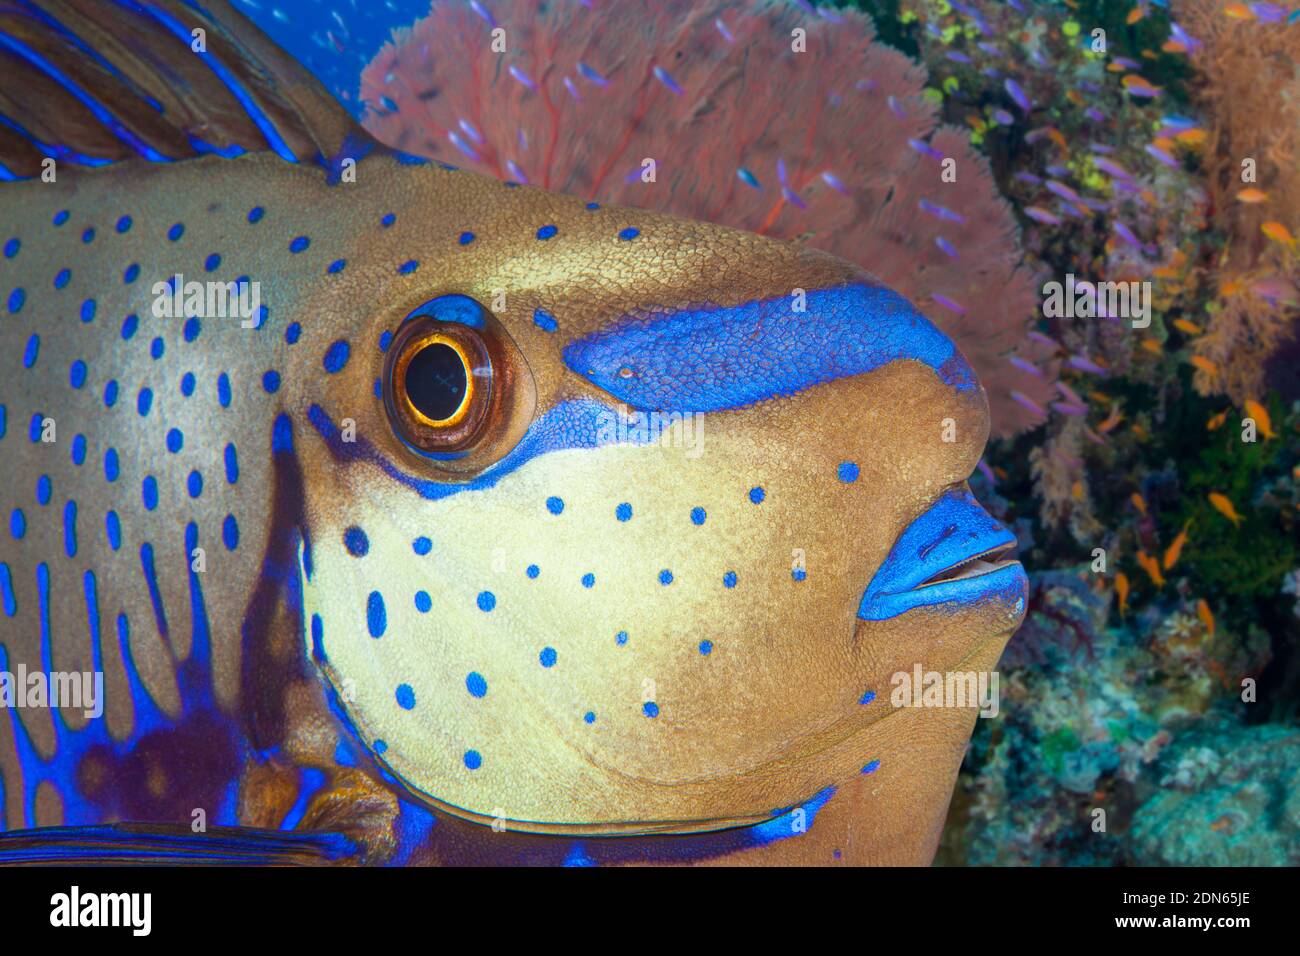 L'estremità anteriore di un bignose unicornfish, naso vlamingii, su una barriera corallina fijiana. Sono anche noti come zebra unicornfish o unicornfish di Vlaming Foto Stock